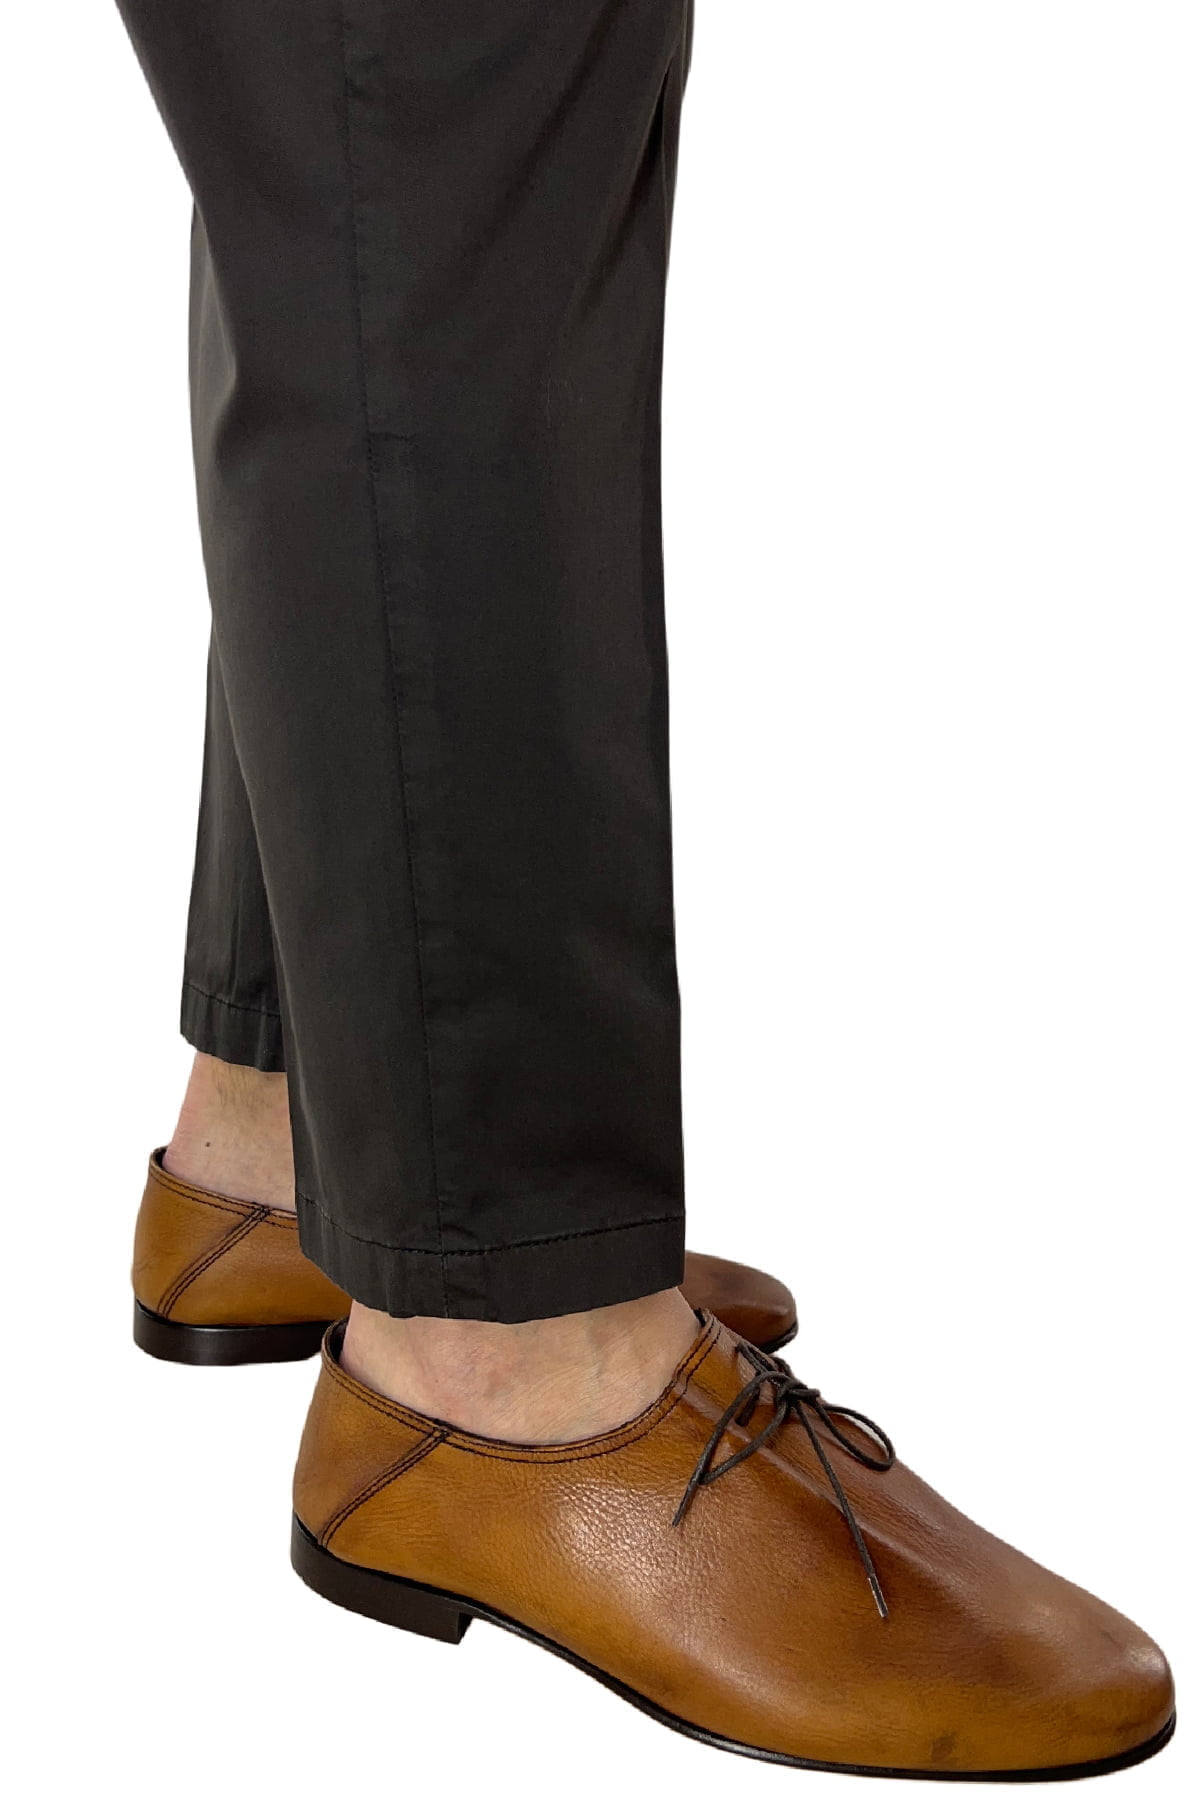 Pantalone uomo Marrone in Cotone tasca america leggermente elastico estivo